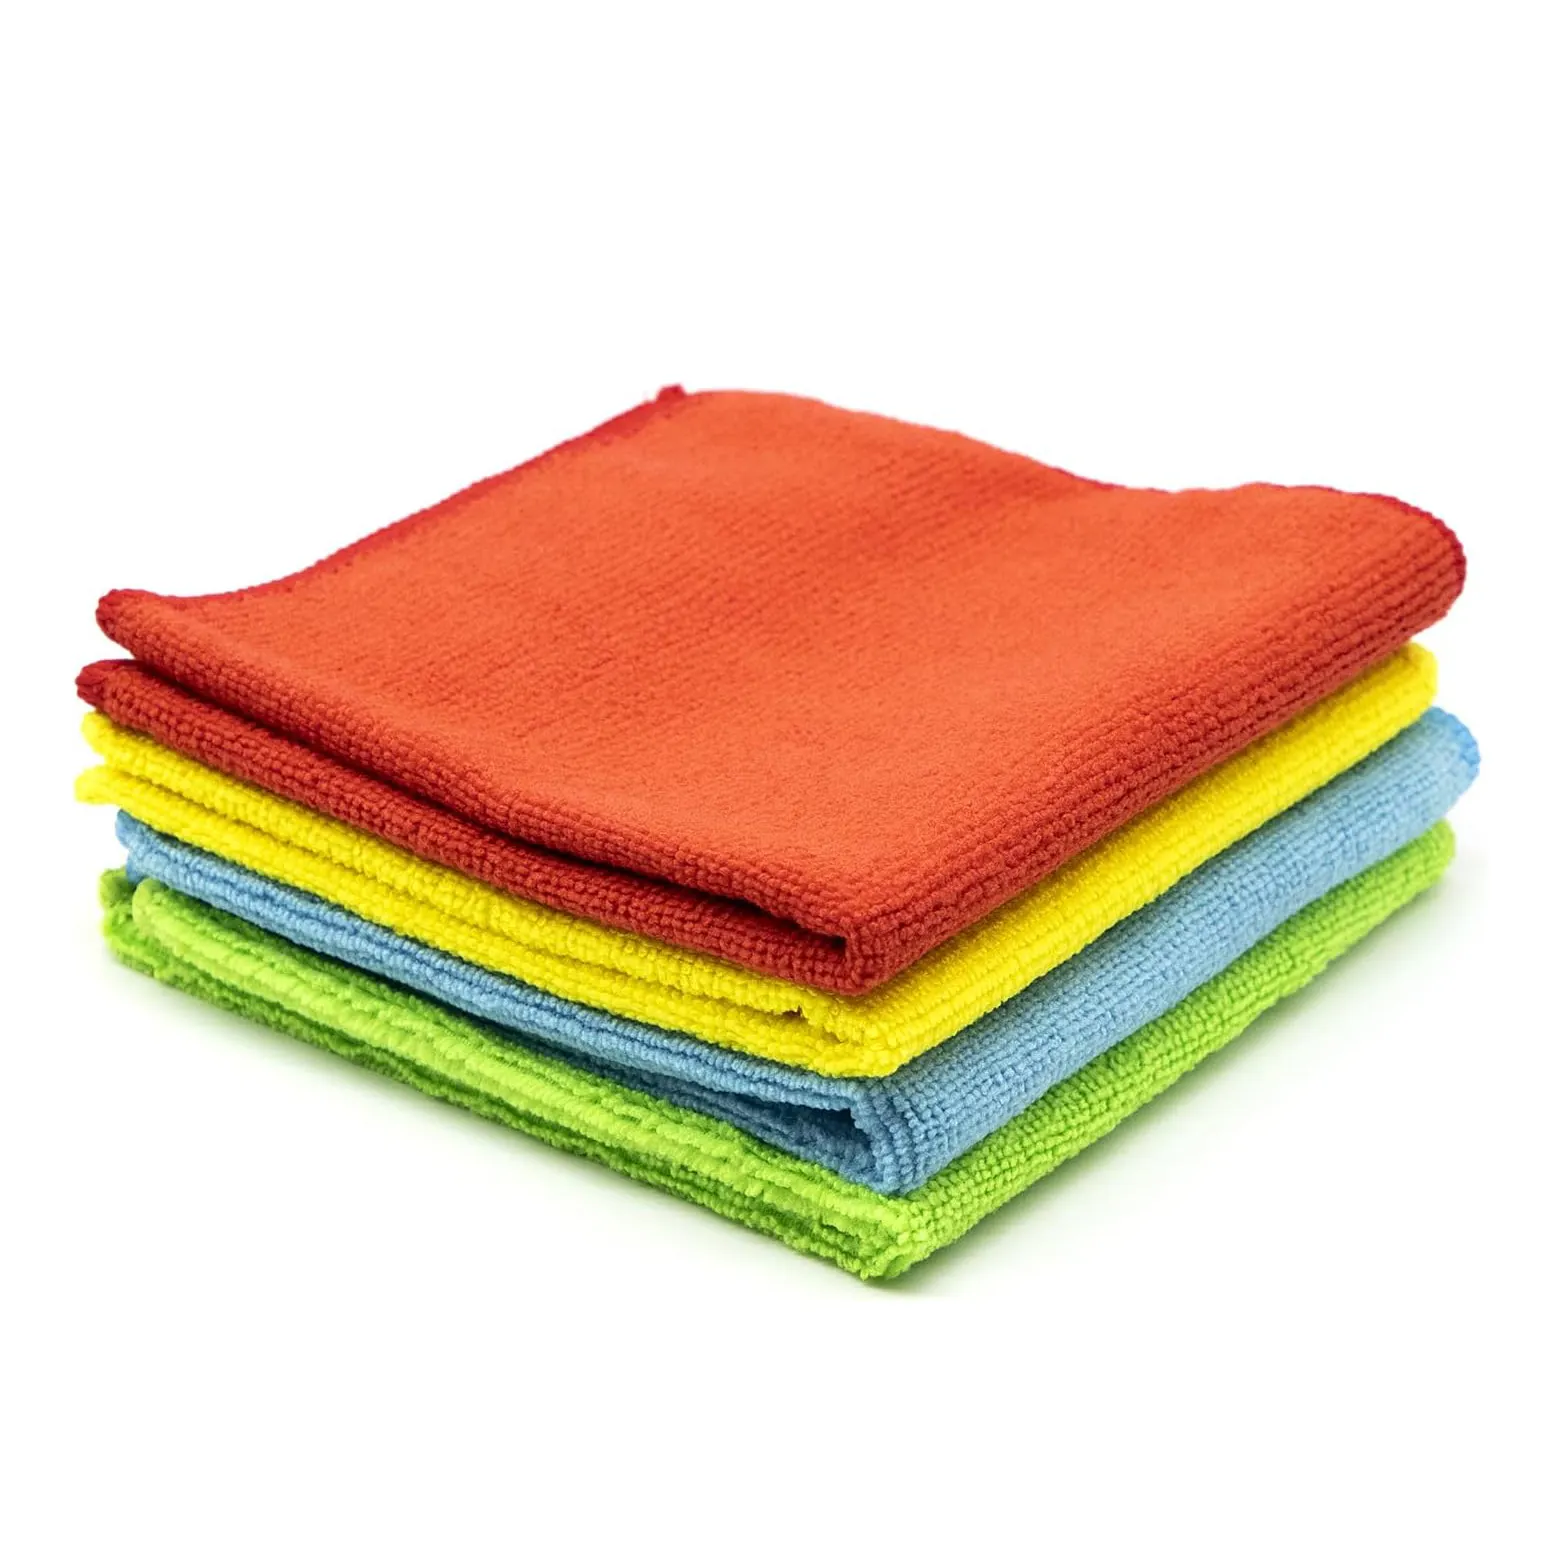 Groothandel Microfiber Keuken Handdoek Vloer Reinigingsdoek Absorberend Auto Wassen Handdoek Microfiber Reinigingsdoek